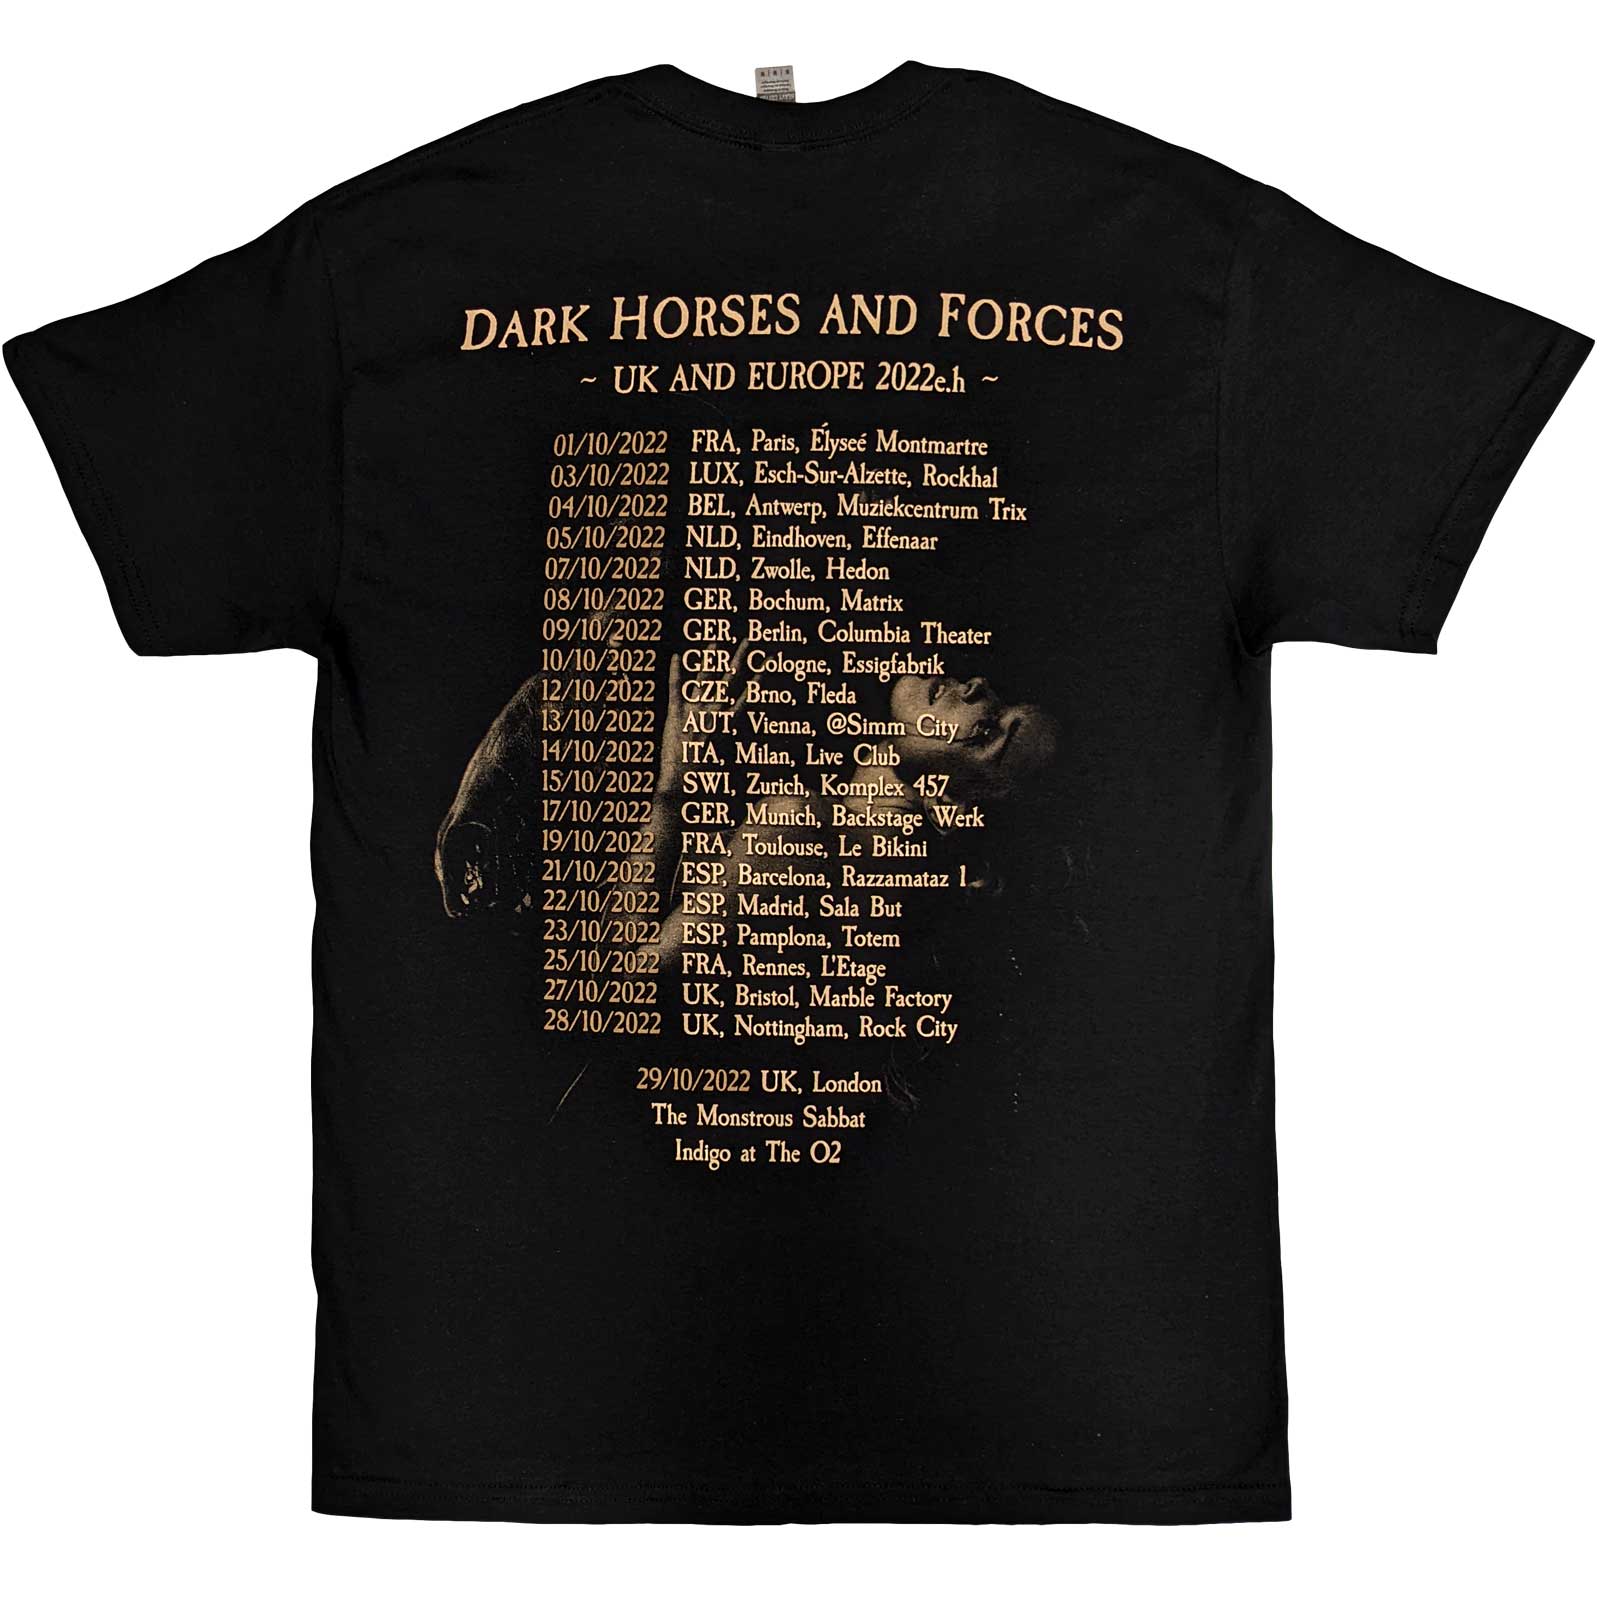 (クレイドル オブ フィルス) Cradle Of Filth オフィシャル商品 ユニセックス Dark Horses Tシャツ バックプリント コットン 半袖 トップス 【海外通販】